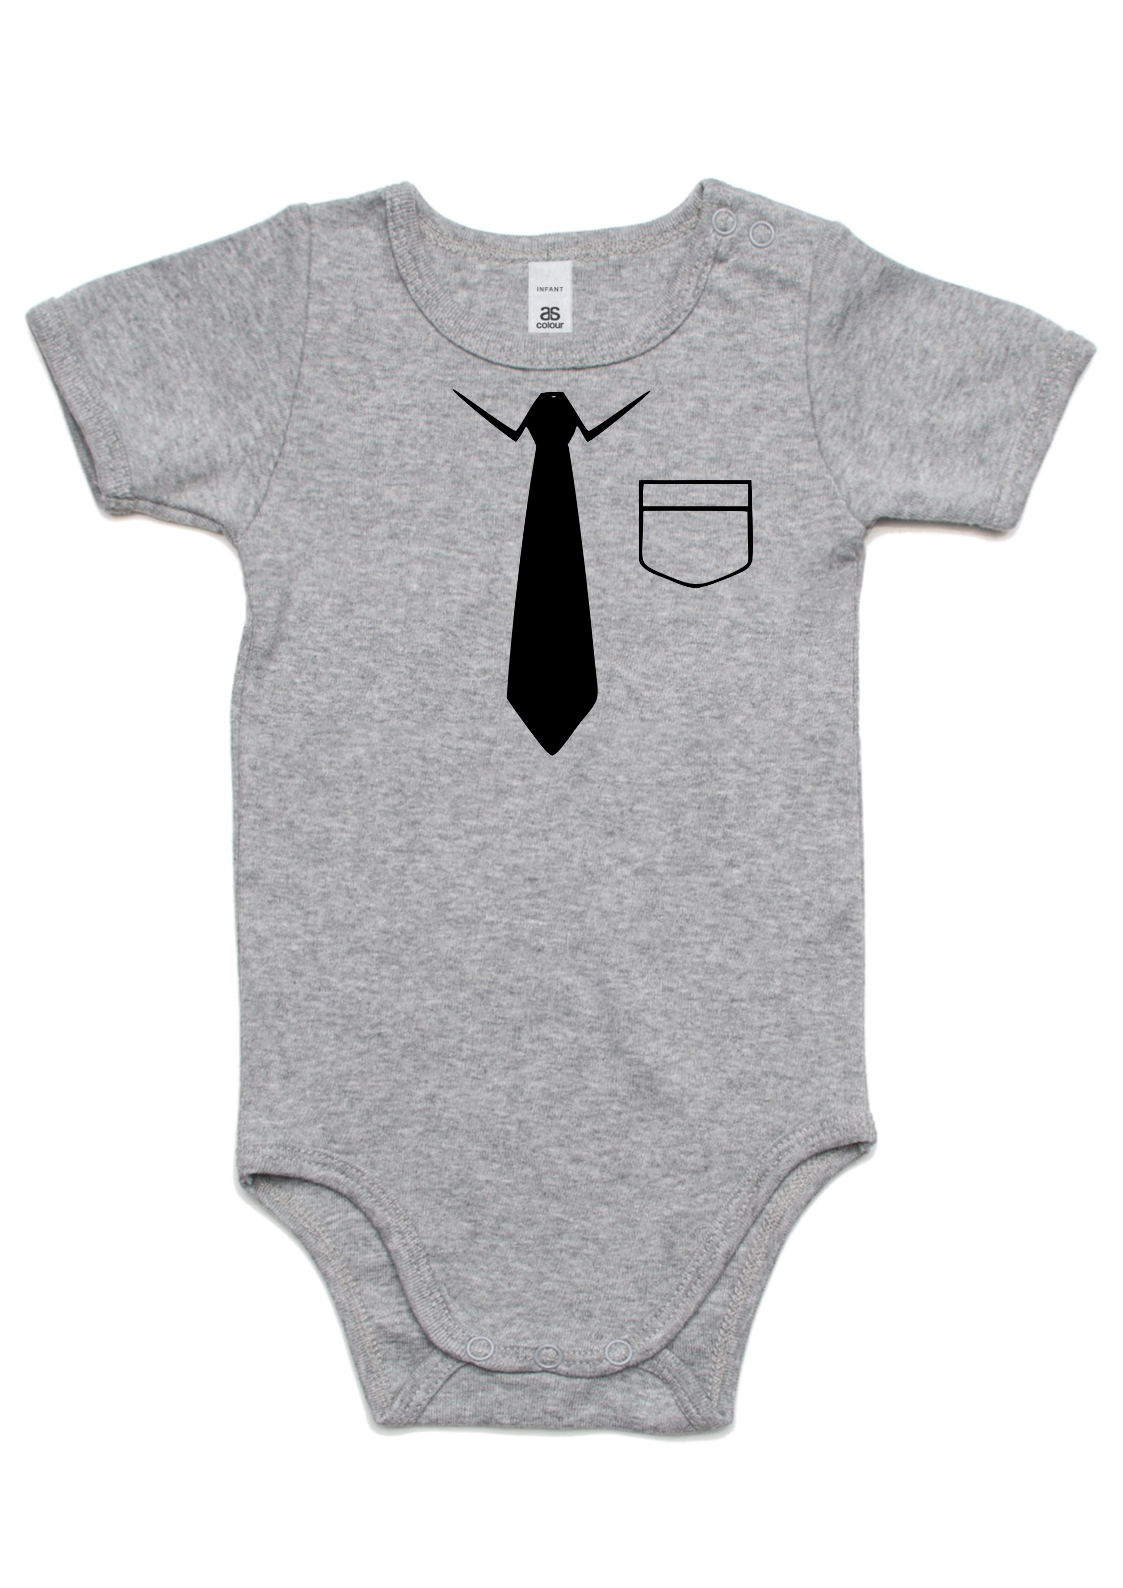 Baby Shirt n Tie